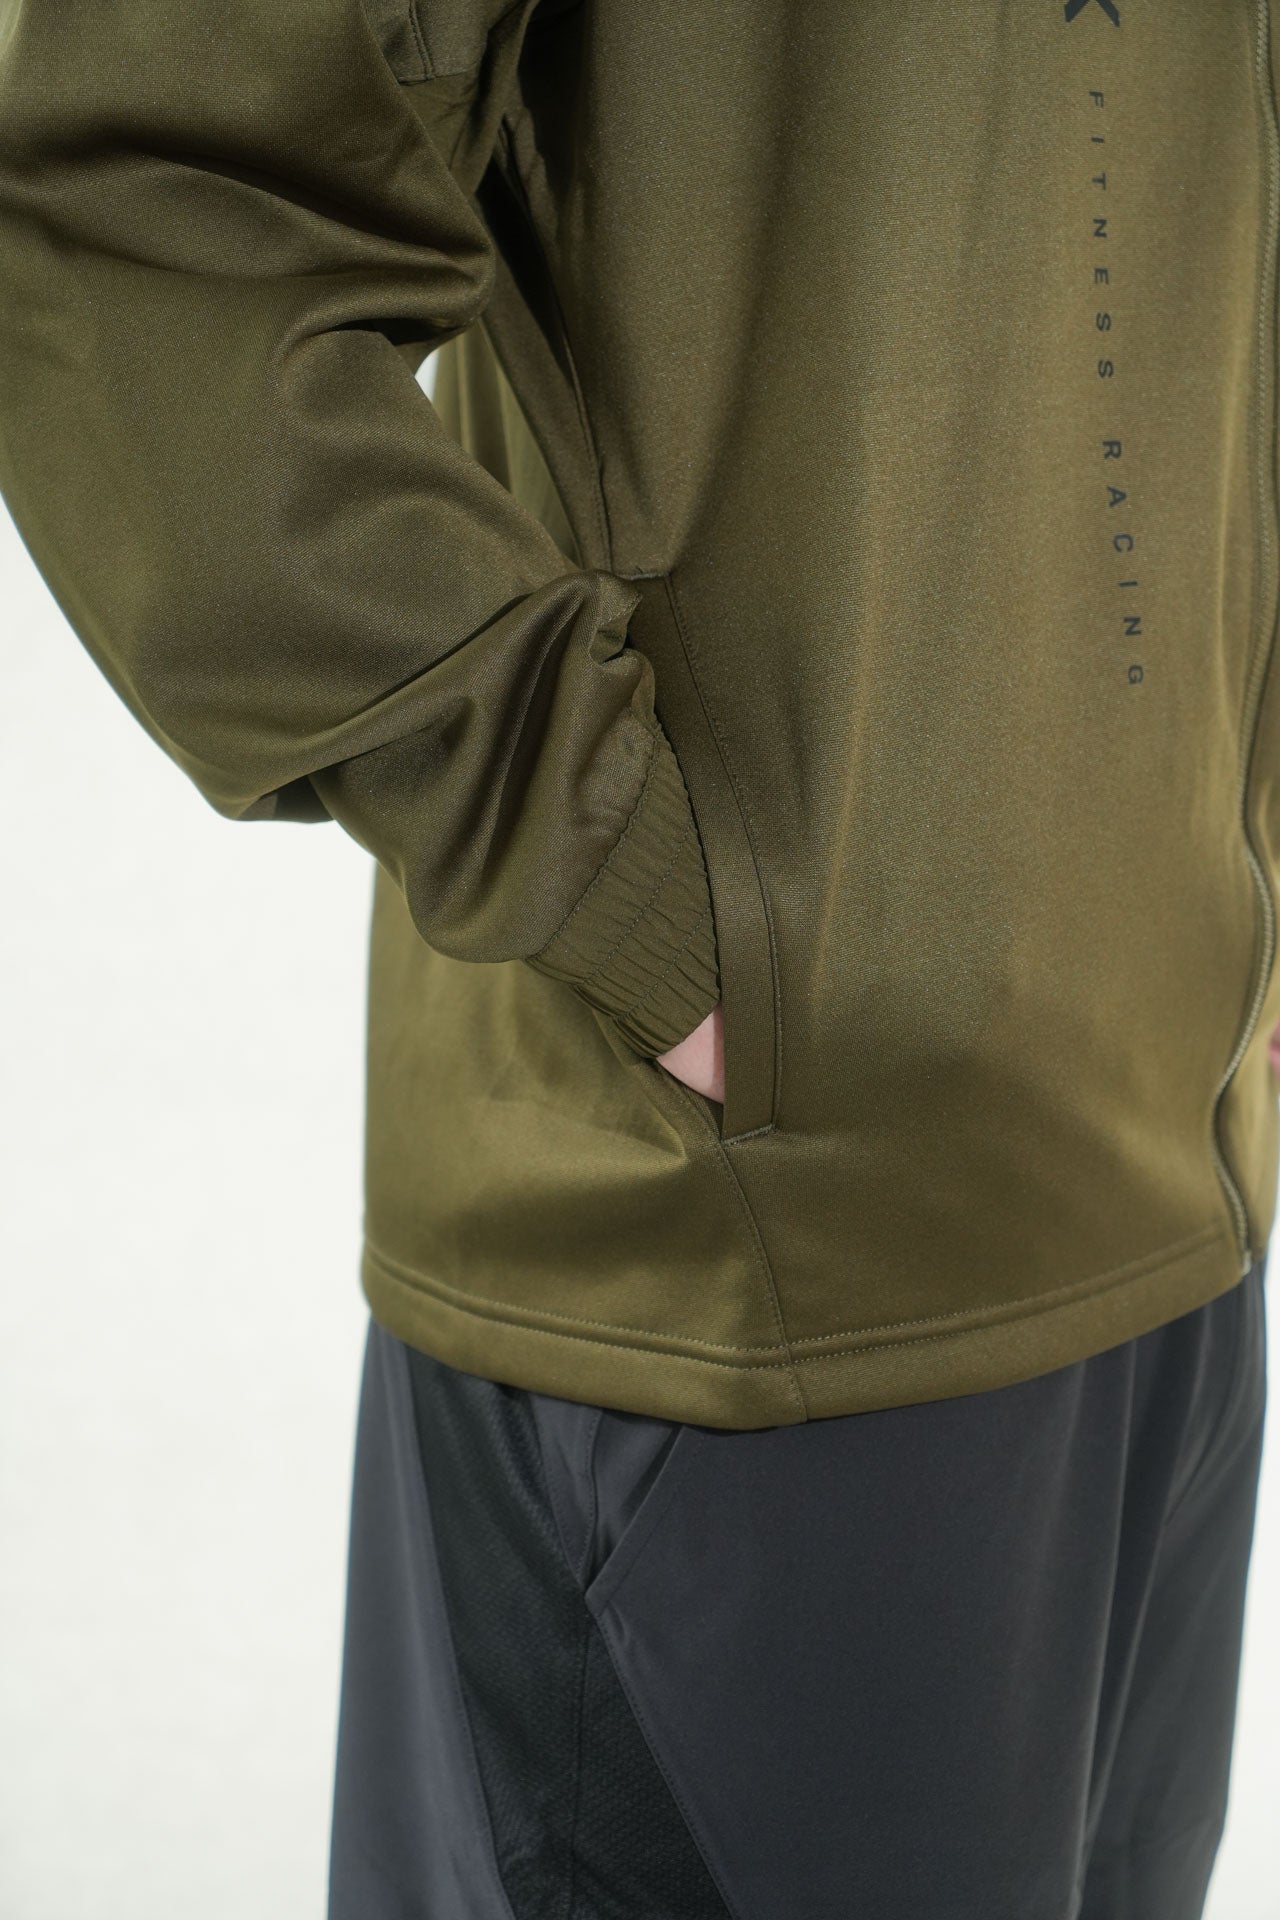 HYROX|PUMA FIT PWR Fleece FZ Jacket - Green